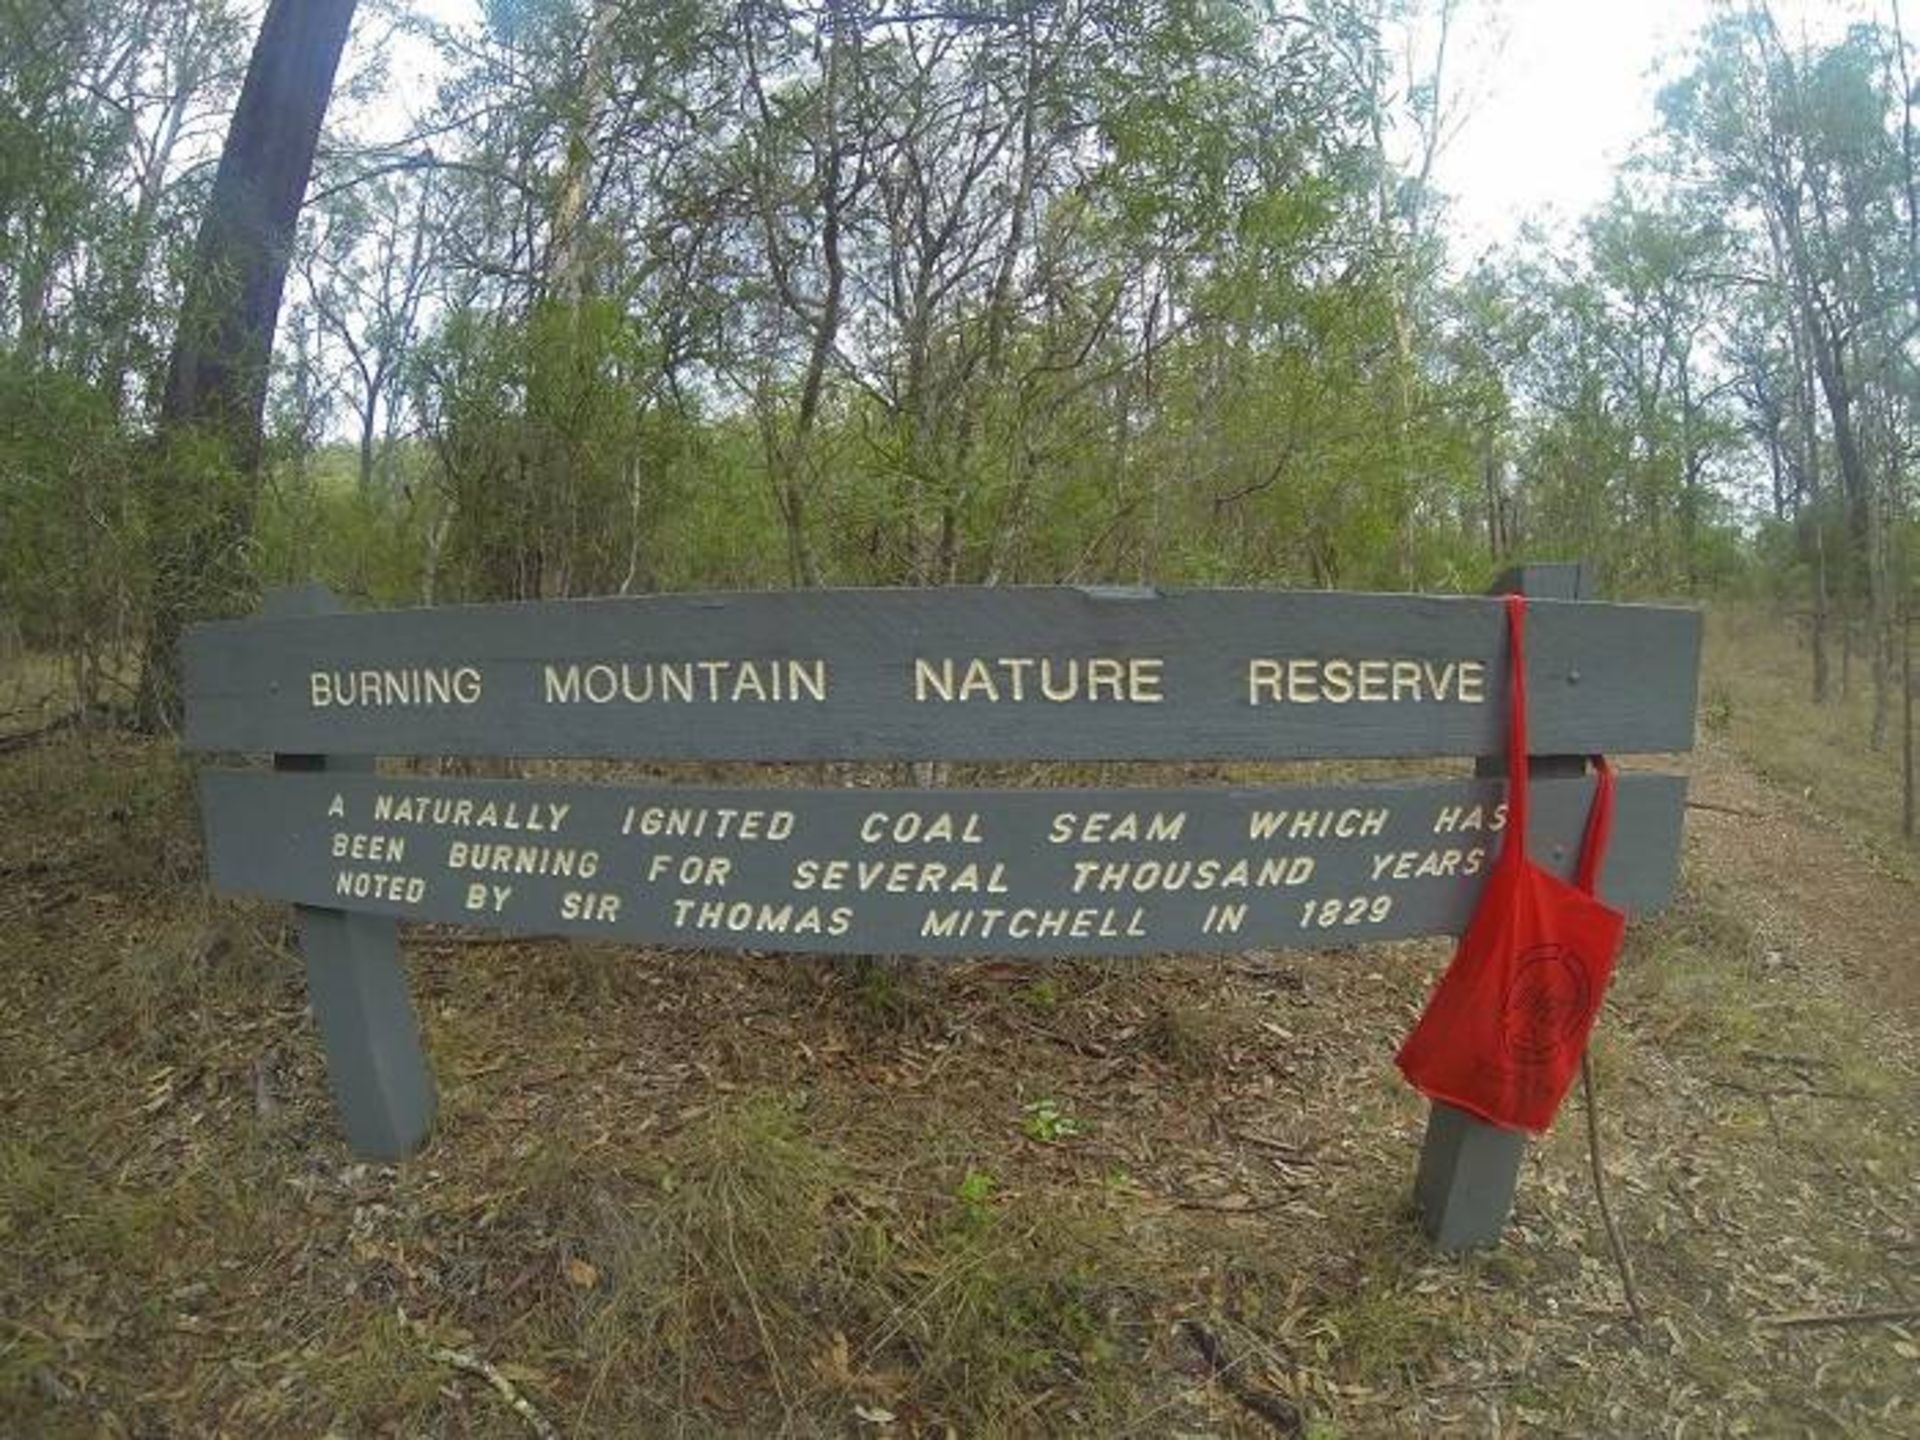 پارک ملی کوه سوزان / تابلویی در پارک ملی کوه سوزان استرالیا